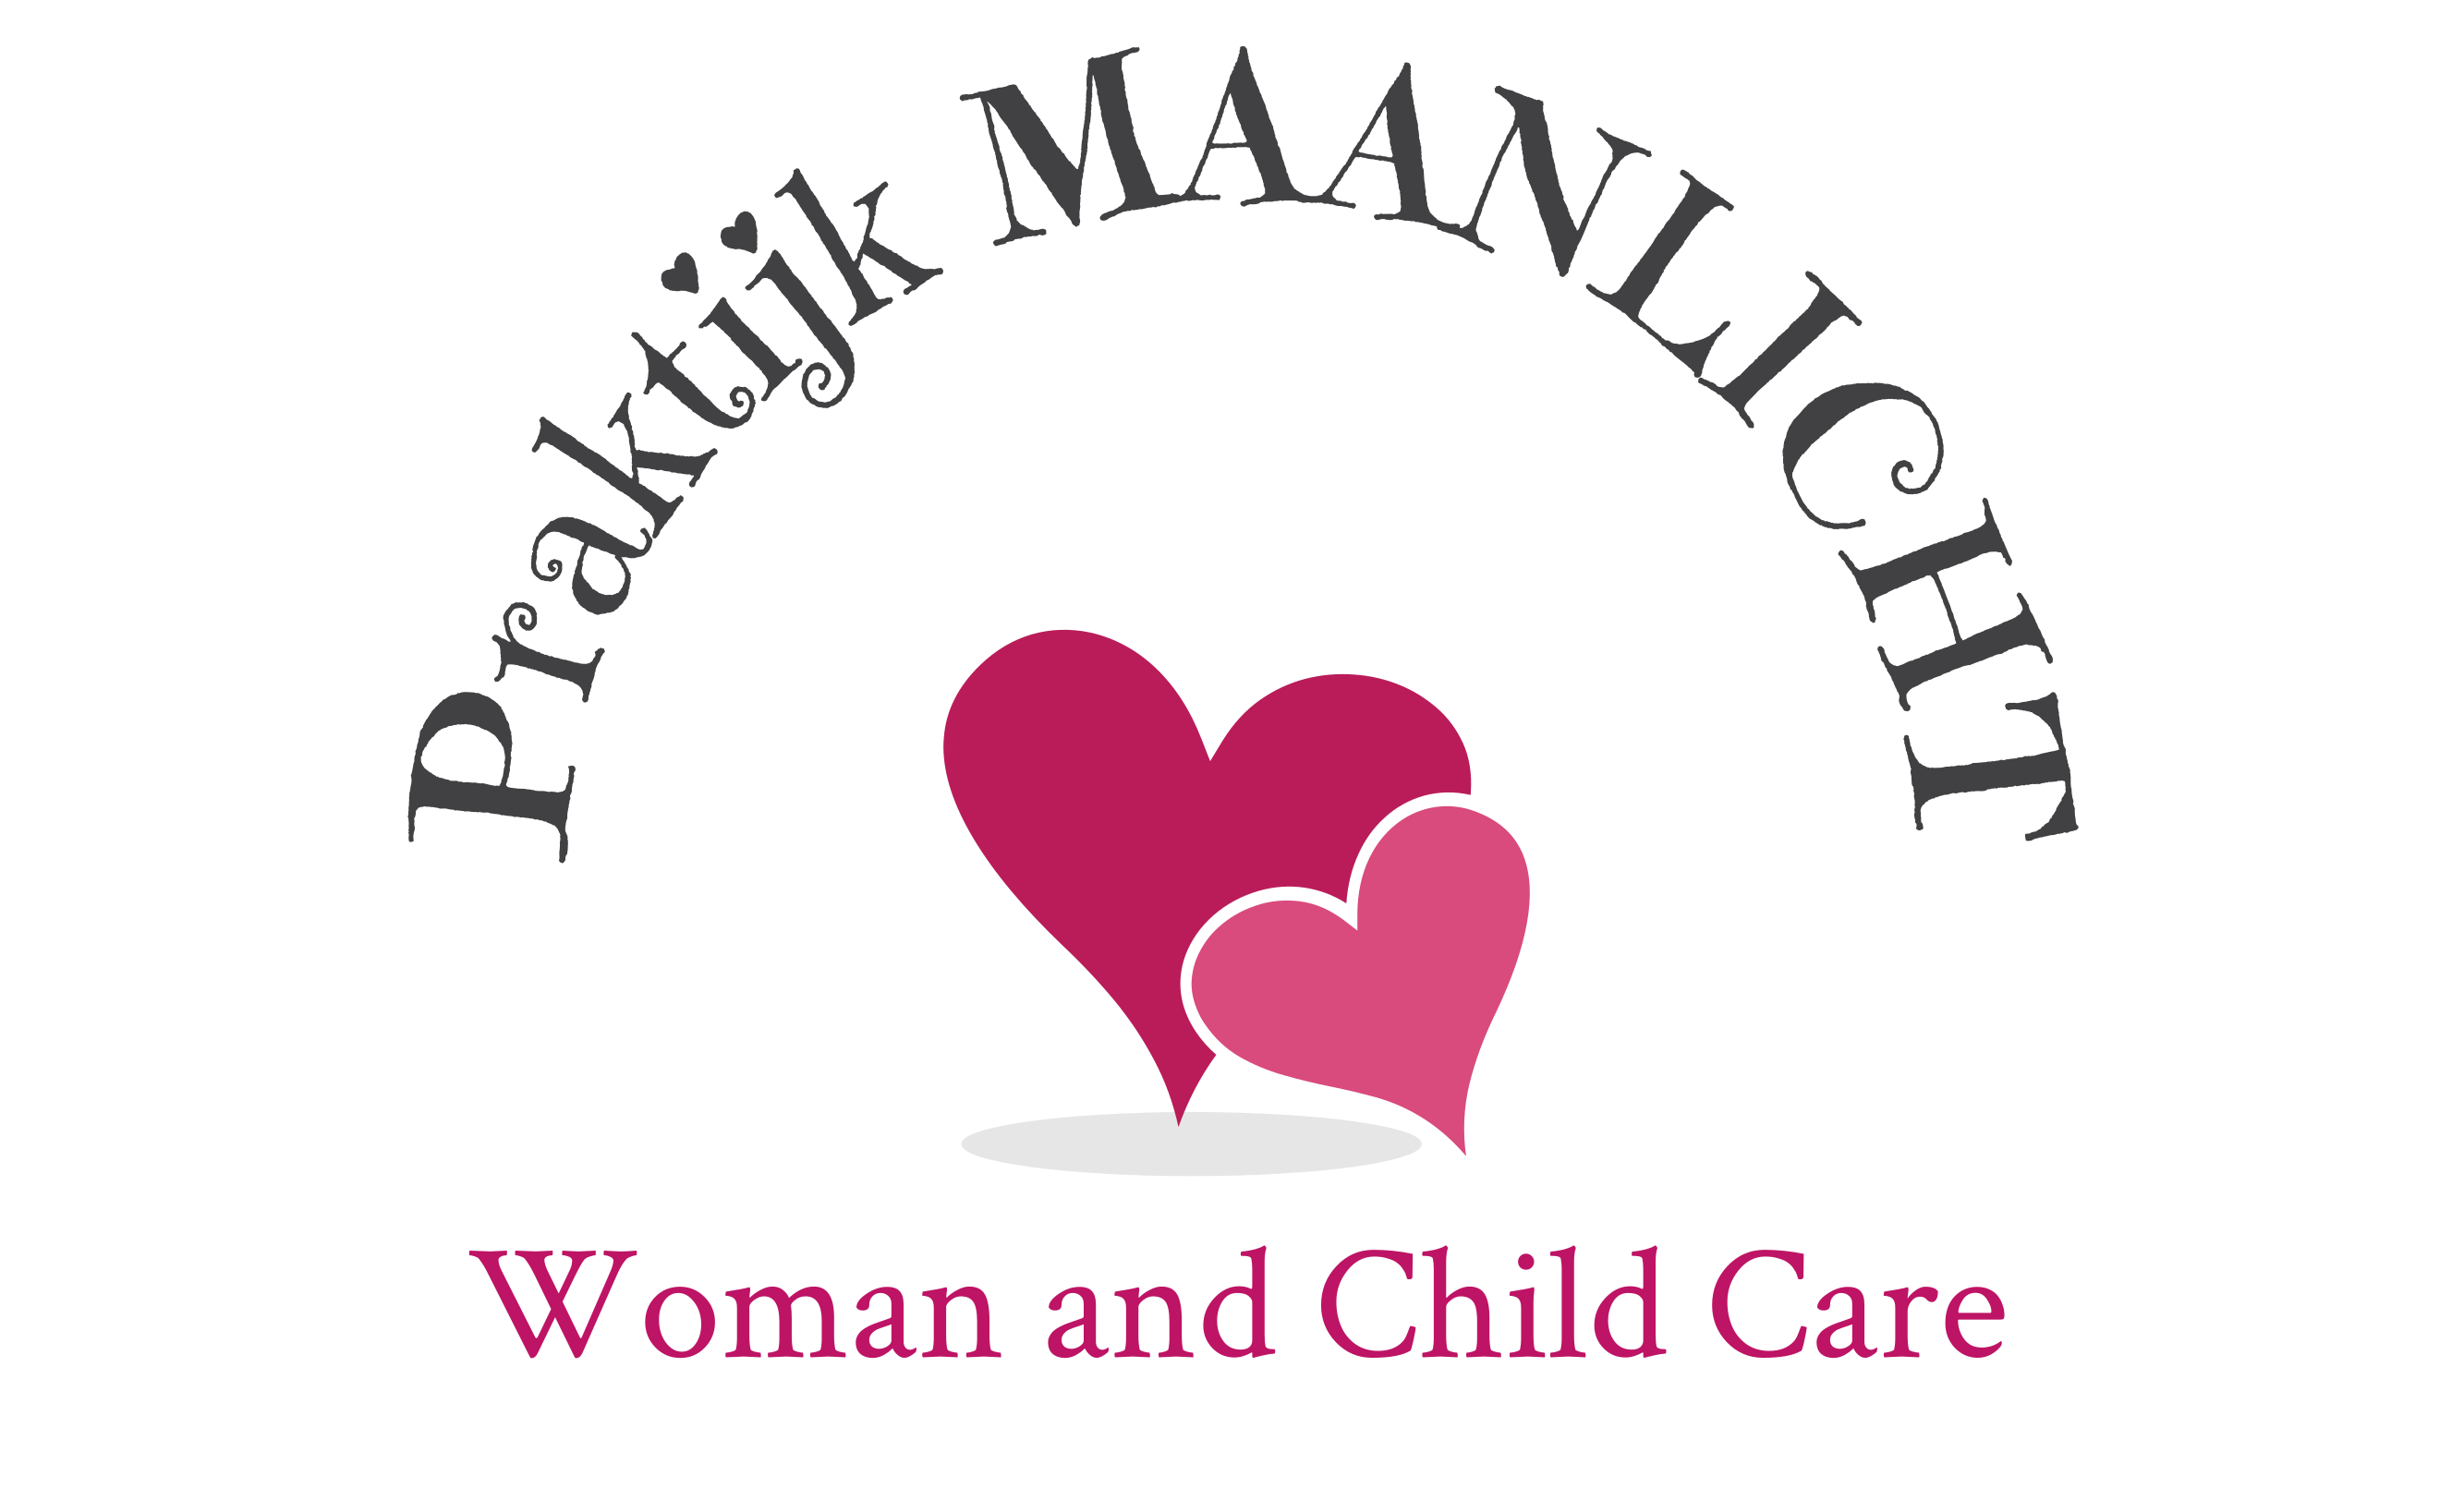 Praktijk Maanlicht-Praktijkmaanlicht.nl-Moniek Klister-Woman and Child care